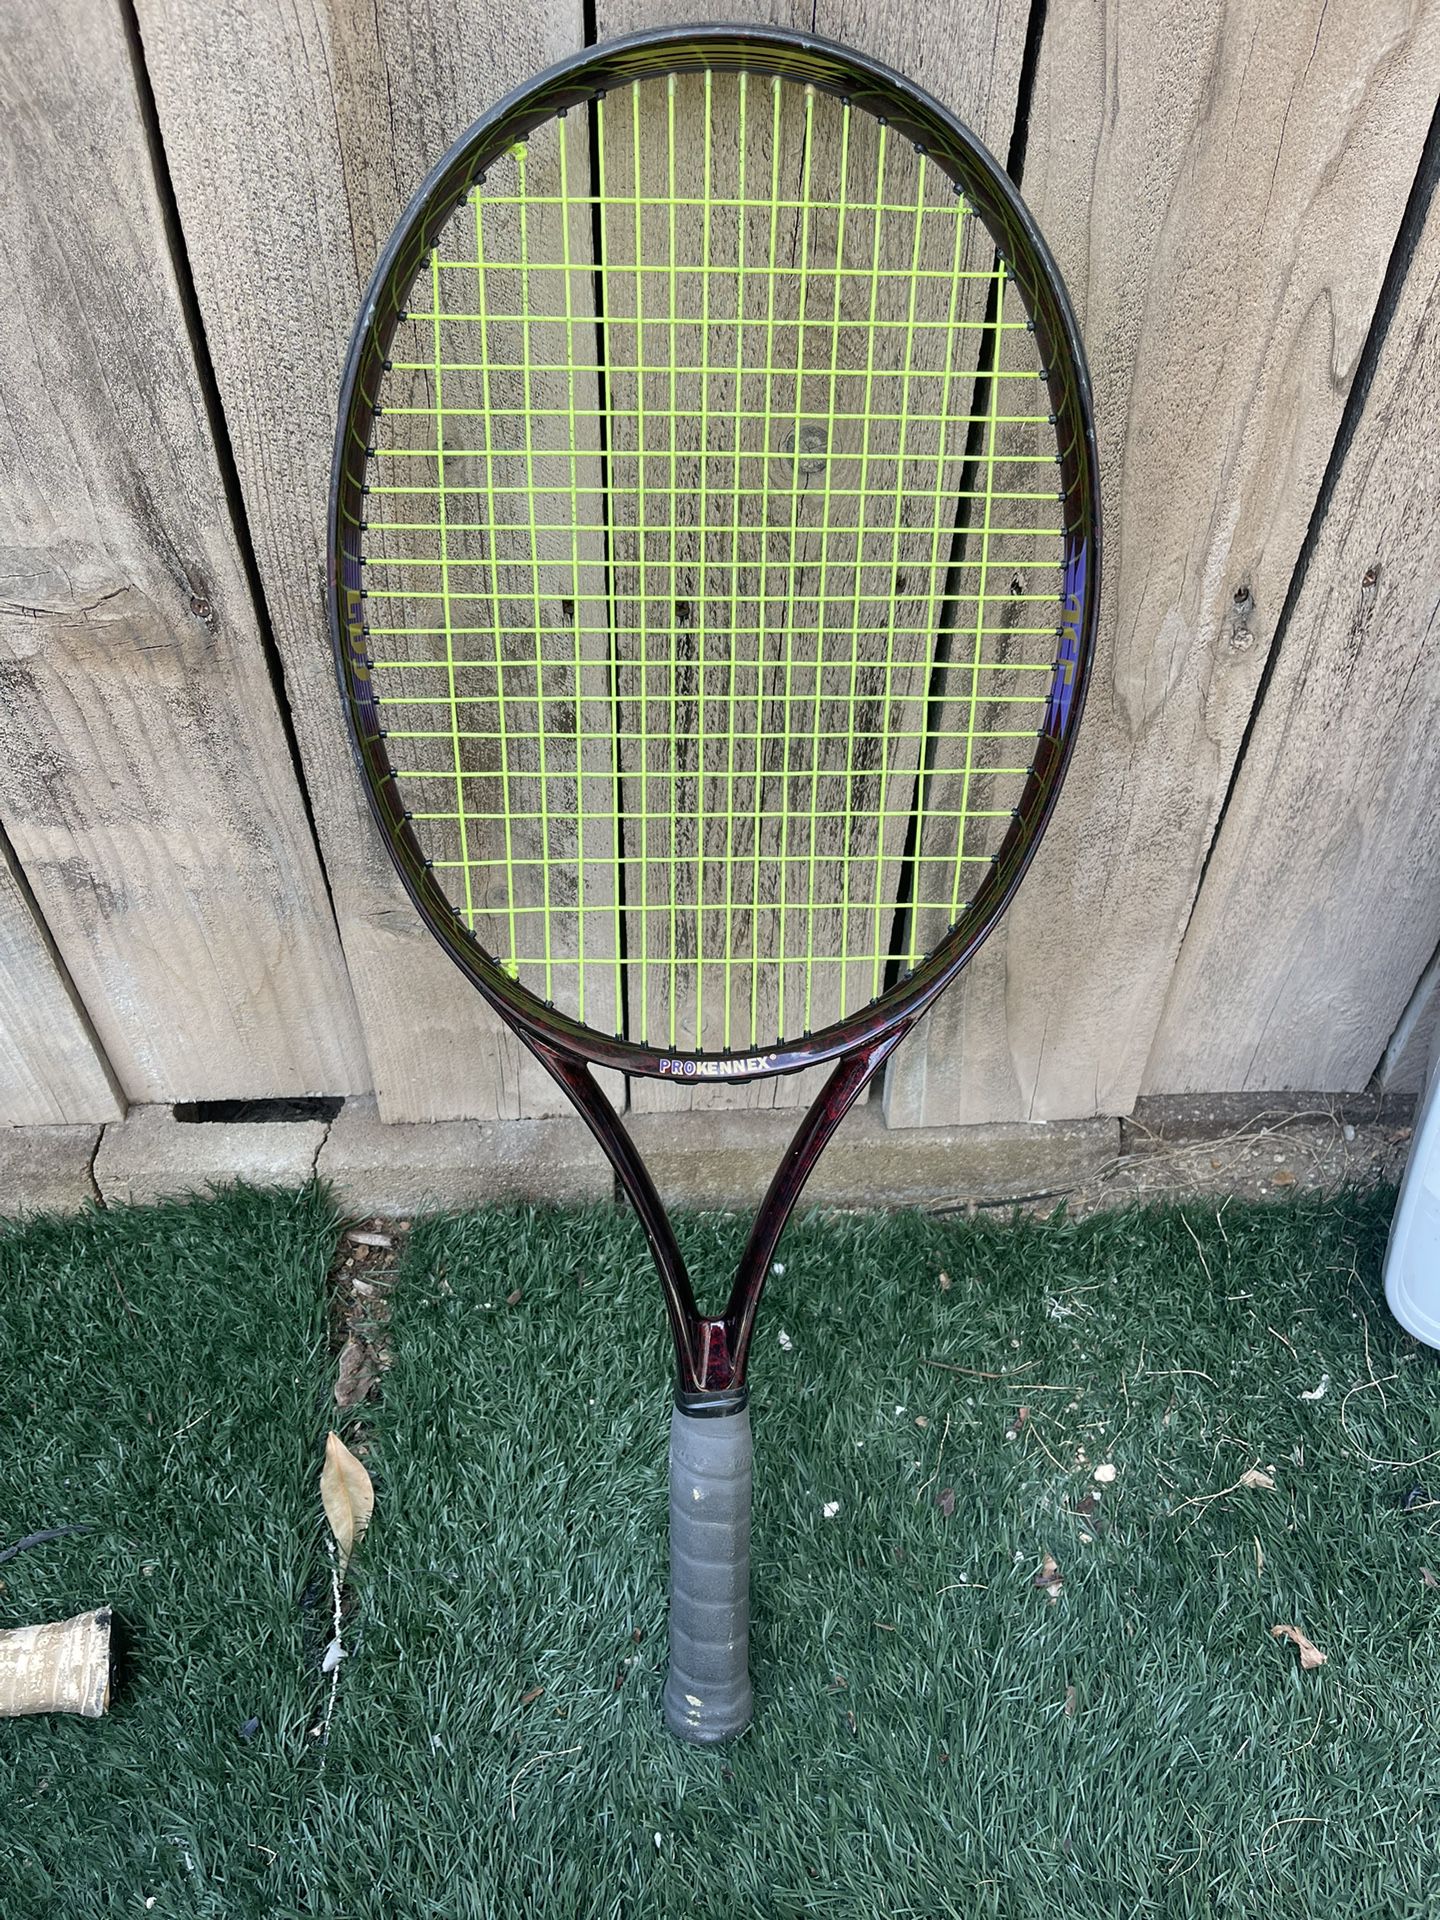 Pro Kennex 265 Tennis Racket